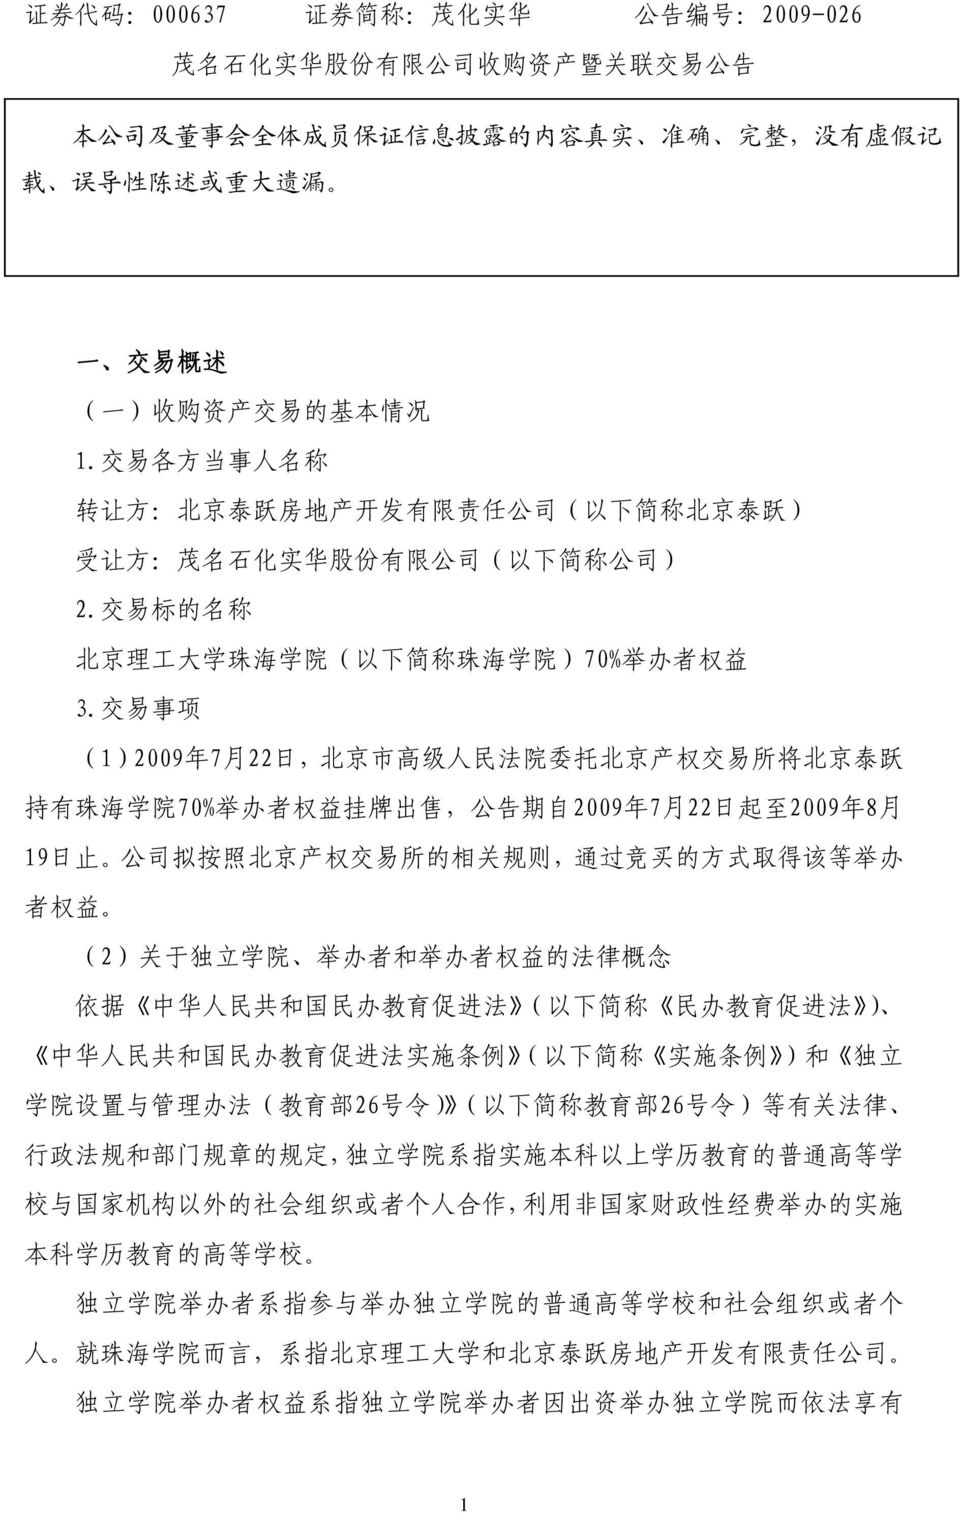 交 易 标 的 名 称 北 京 理 工 大 学 珠 海 学 院 ( 以 下 简 称 珠 海 学 院 )70% 举 办 者 权 益 3.